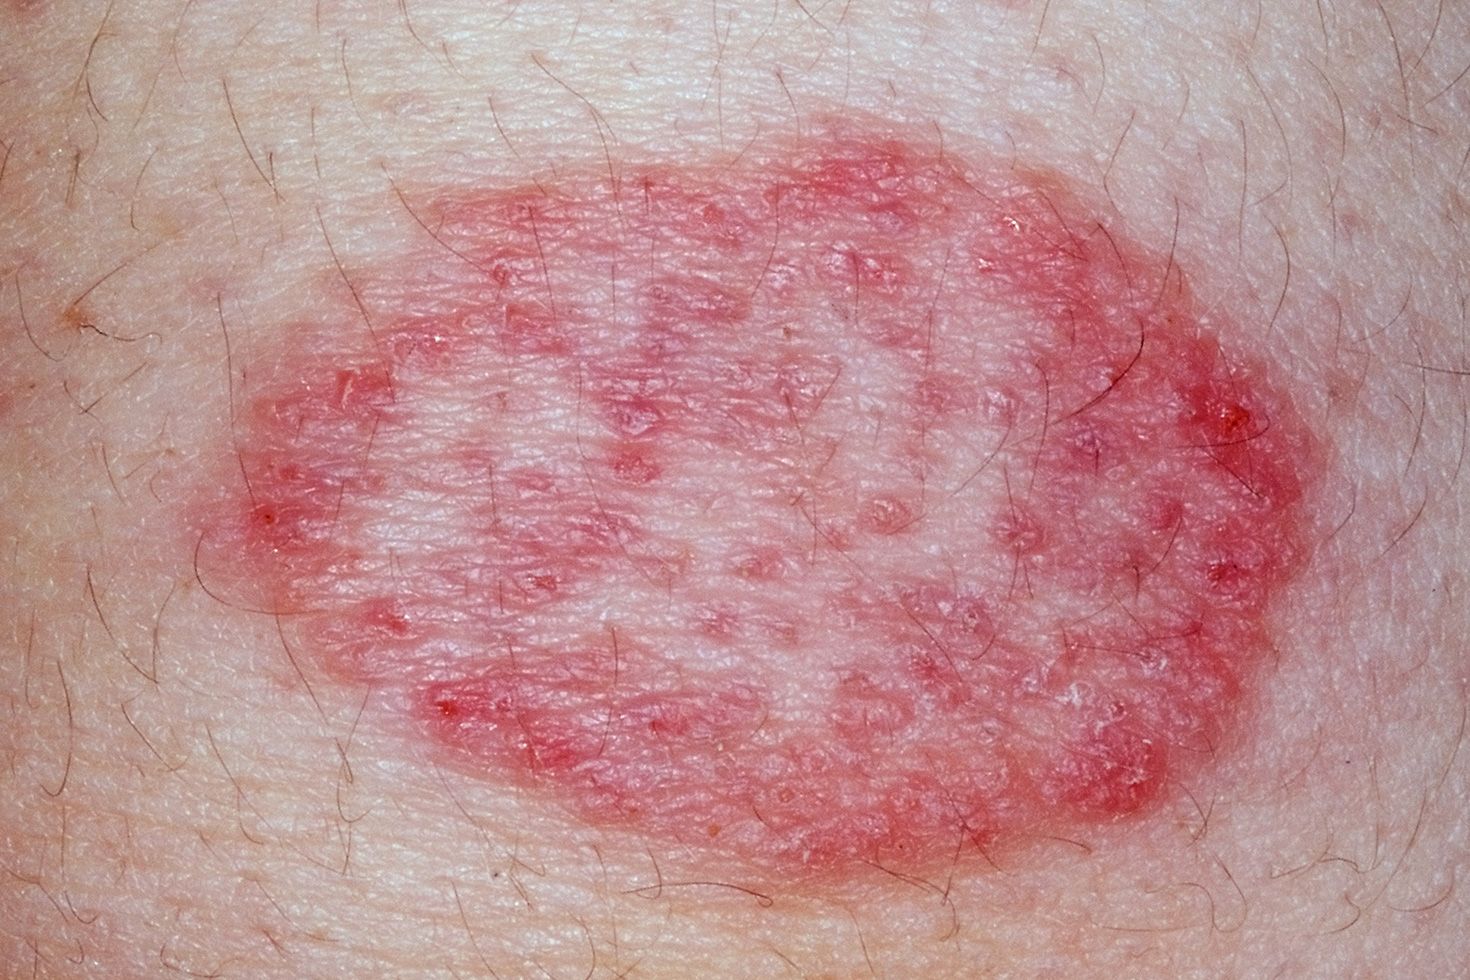 Itchy skin rashe on bottom